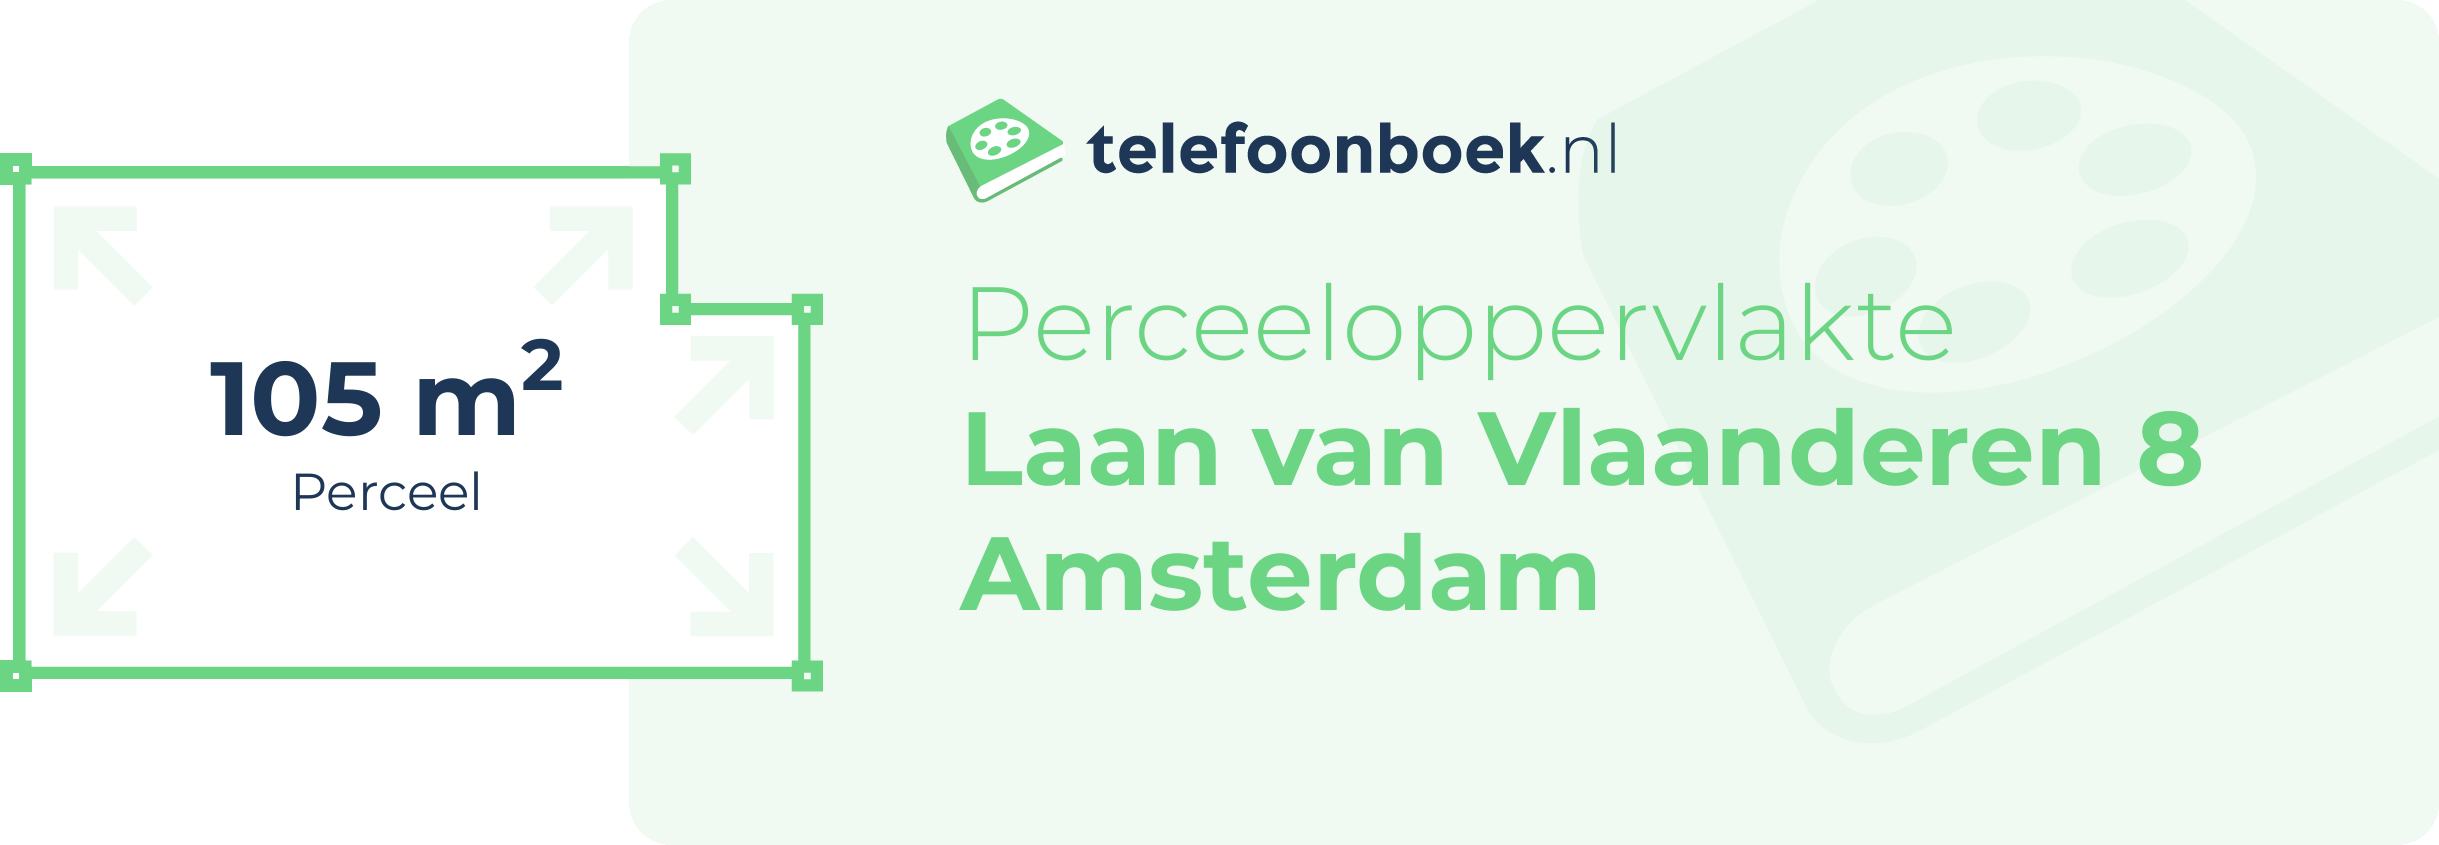 Perceeloppervlakte Laan Van Vlaanderen 8 Amsterdam